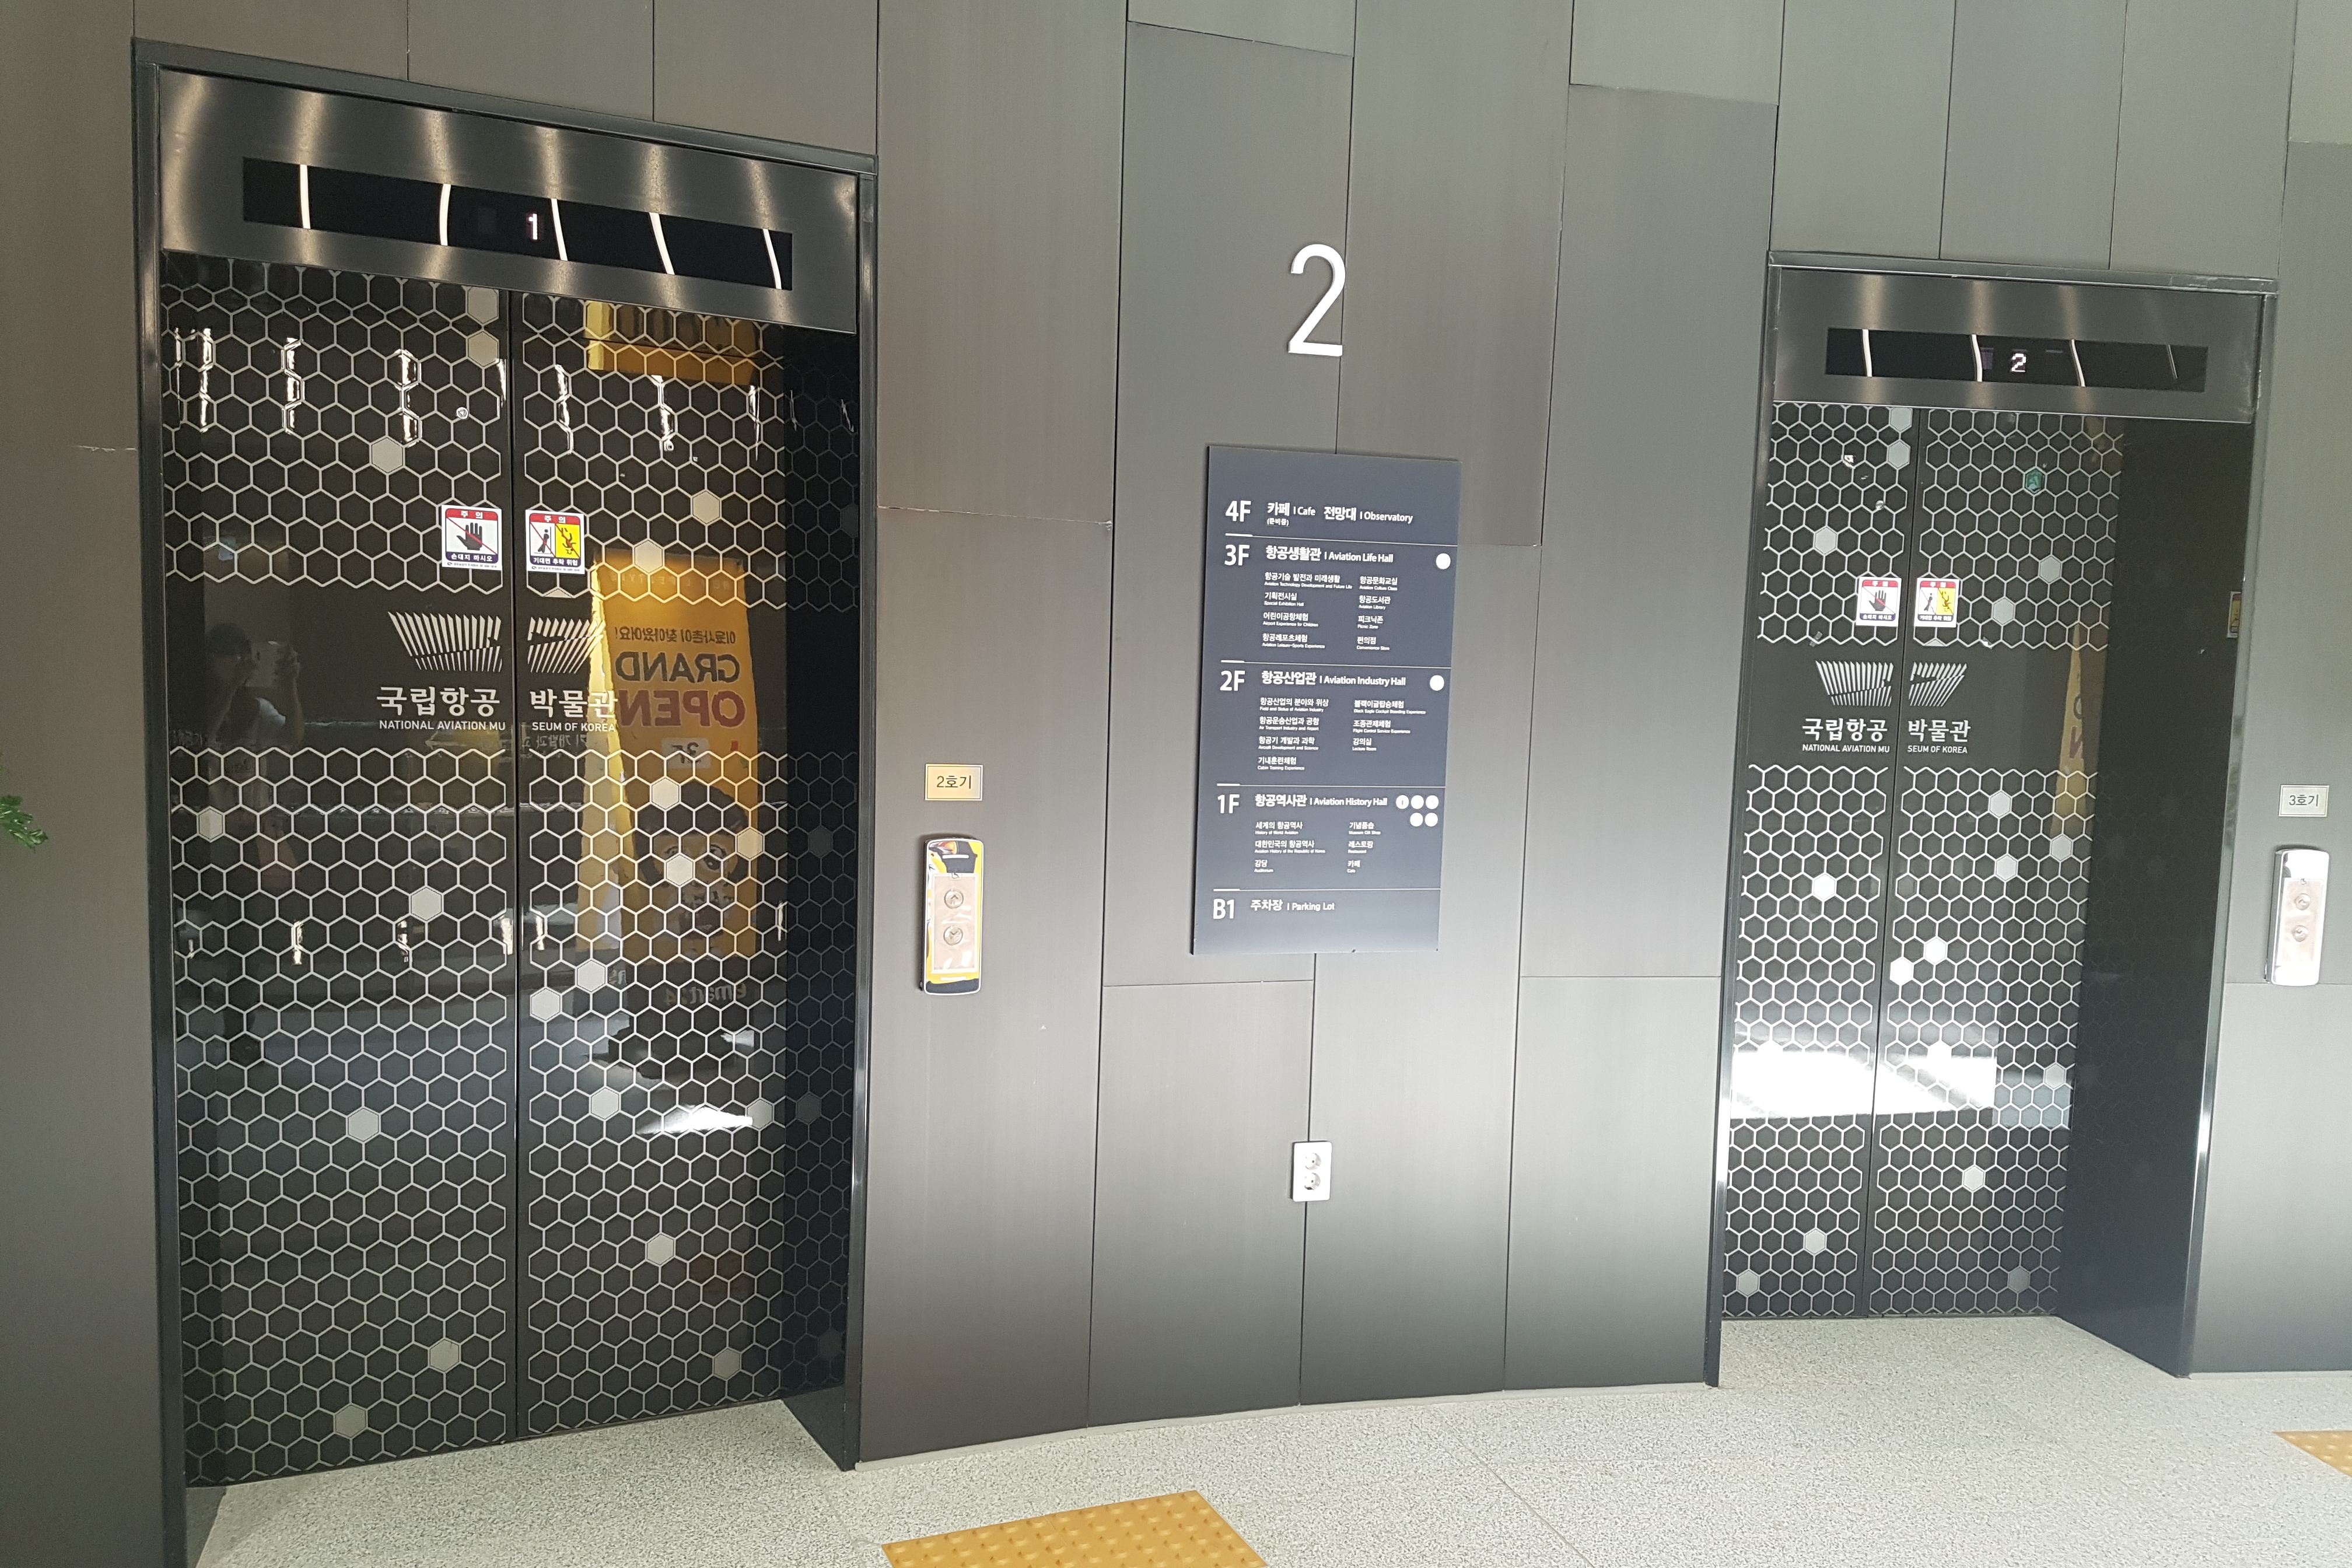 엘리베이터0 : 국립항공박물관 엘리베이터 출입구 전경